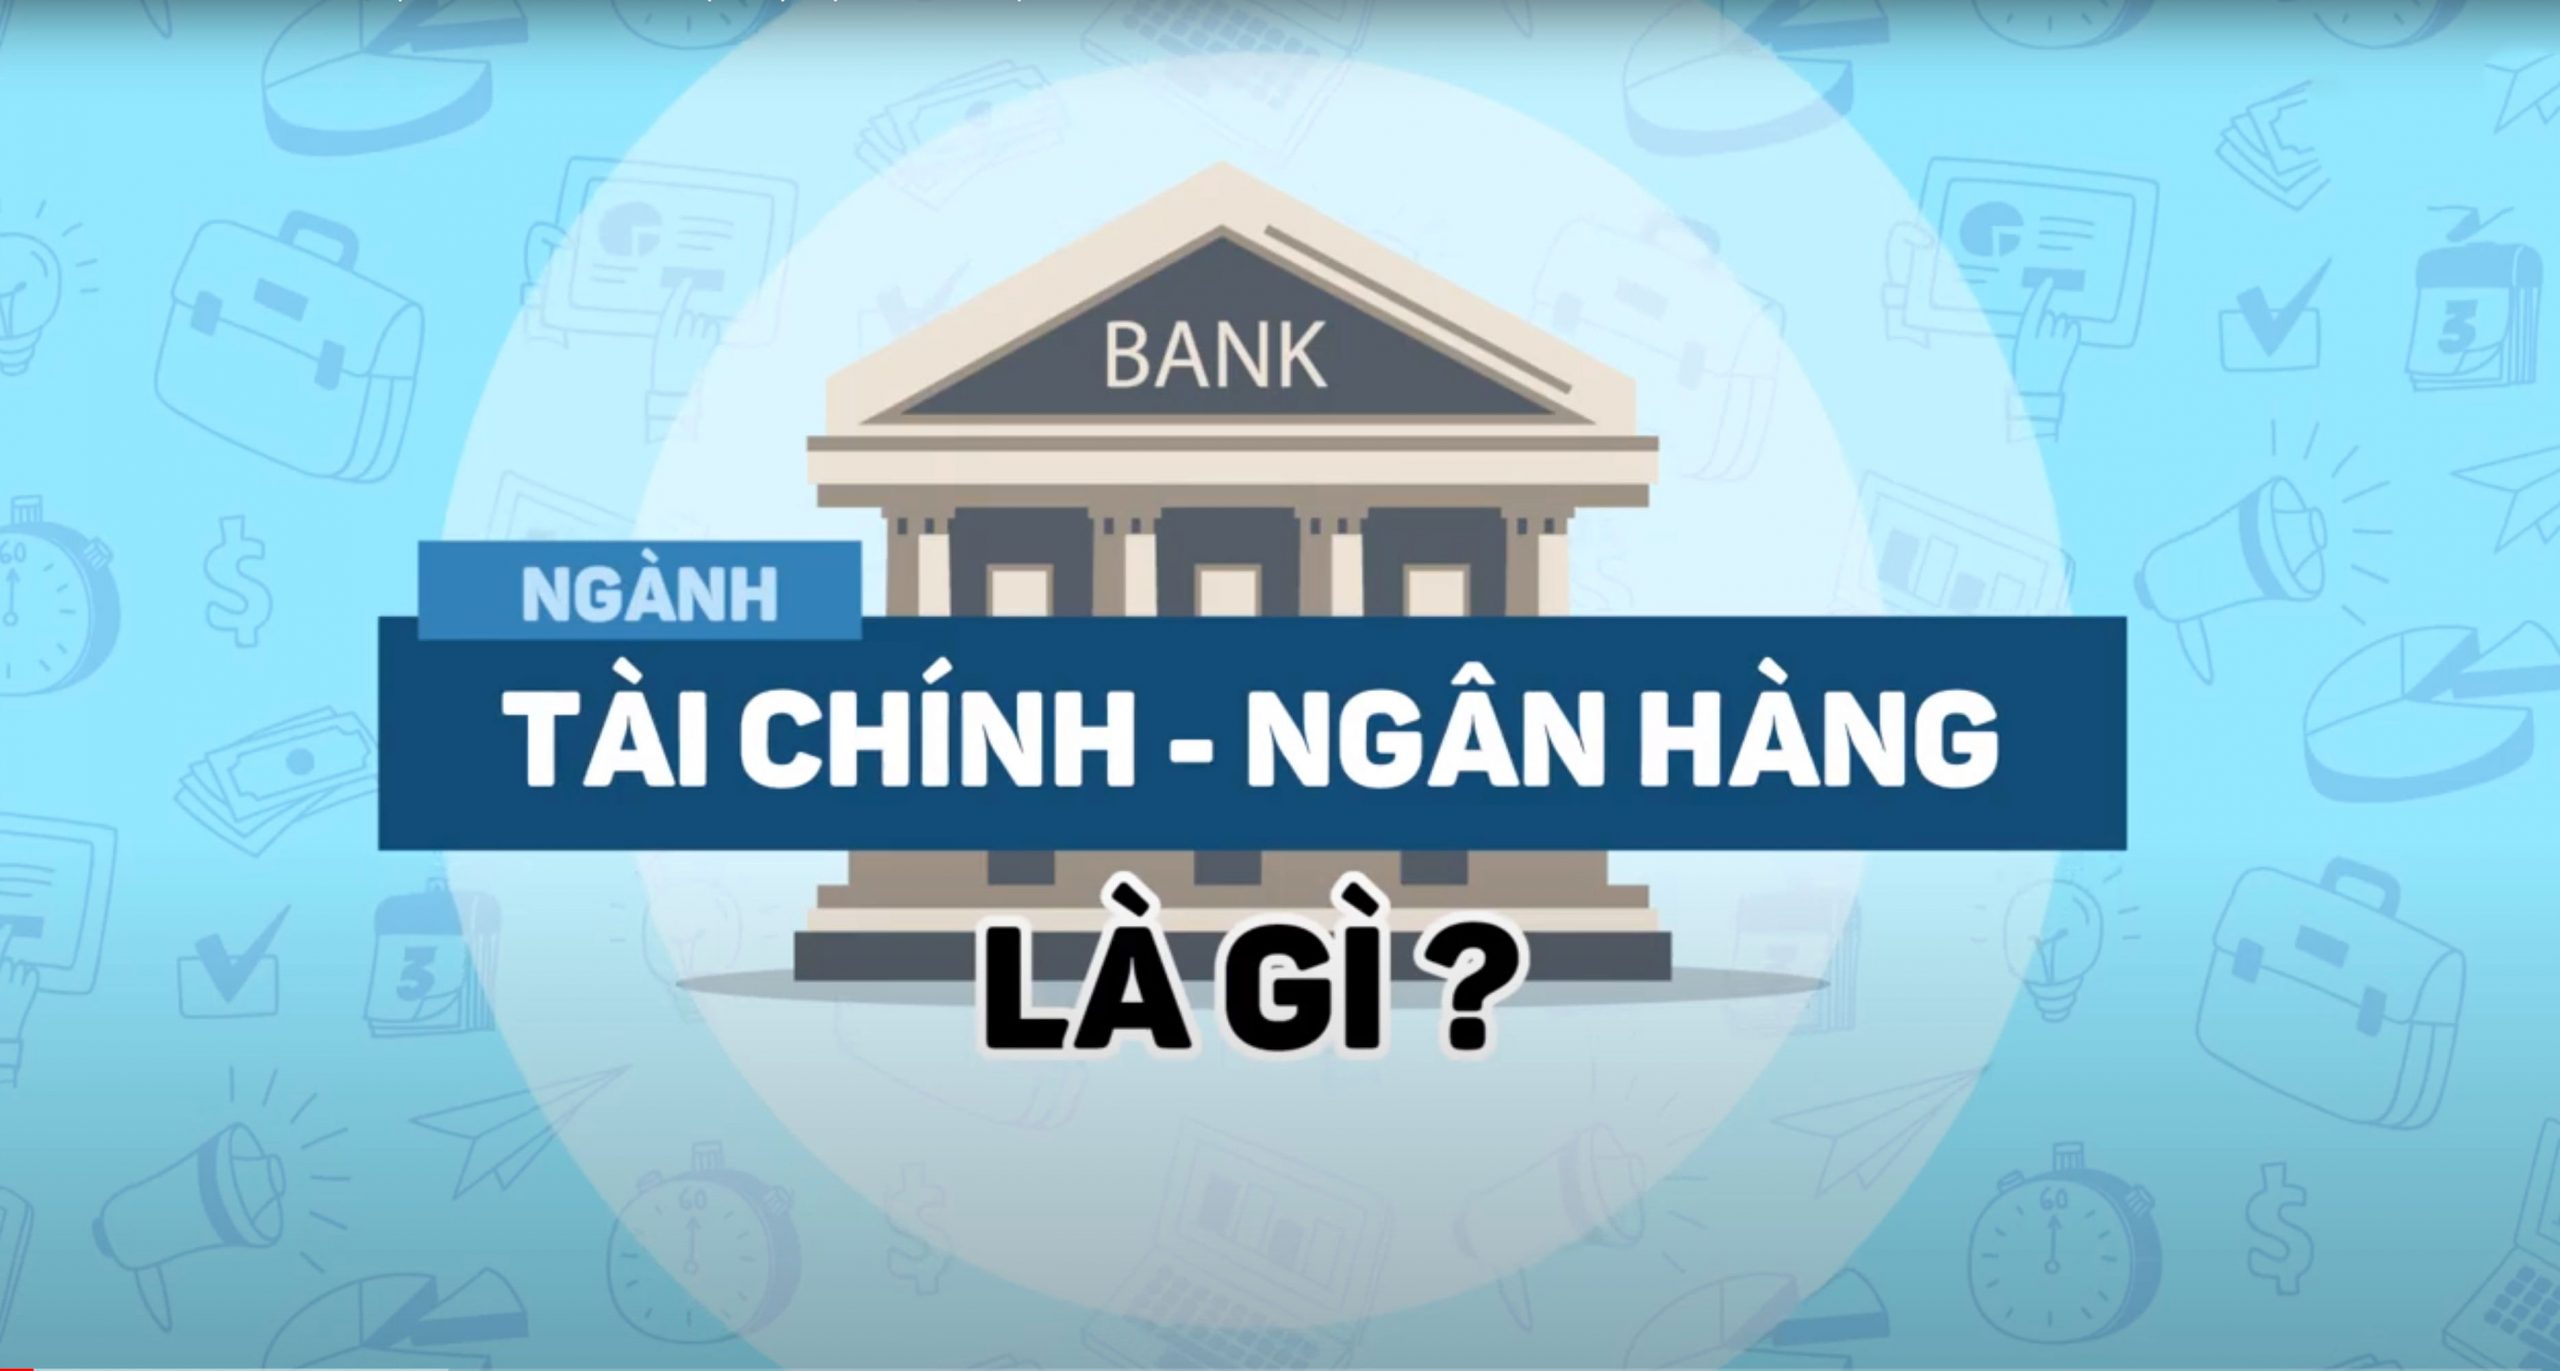 Ngành tài chính ngân hàng là gì